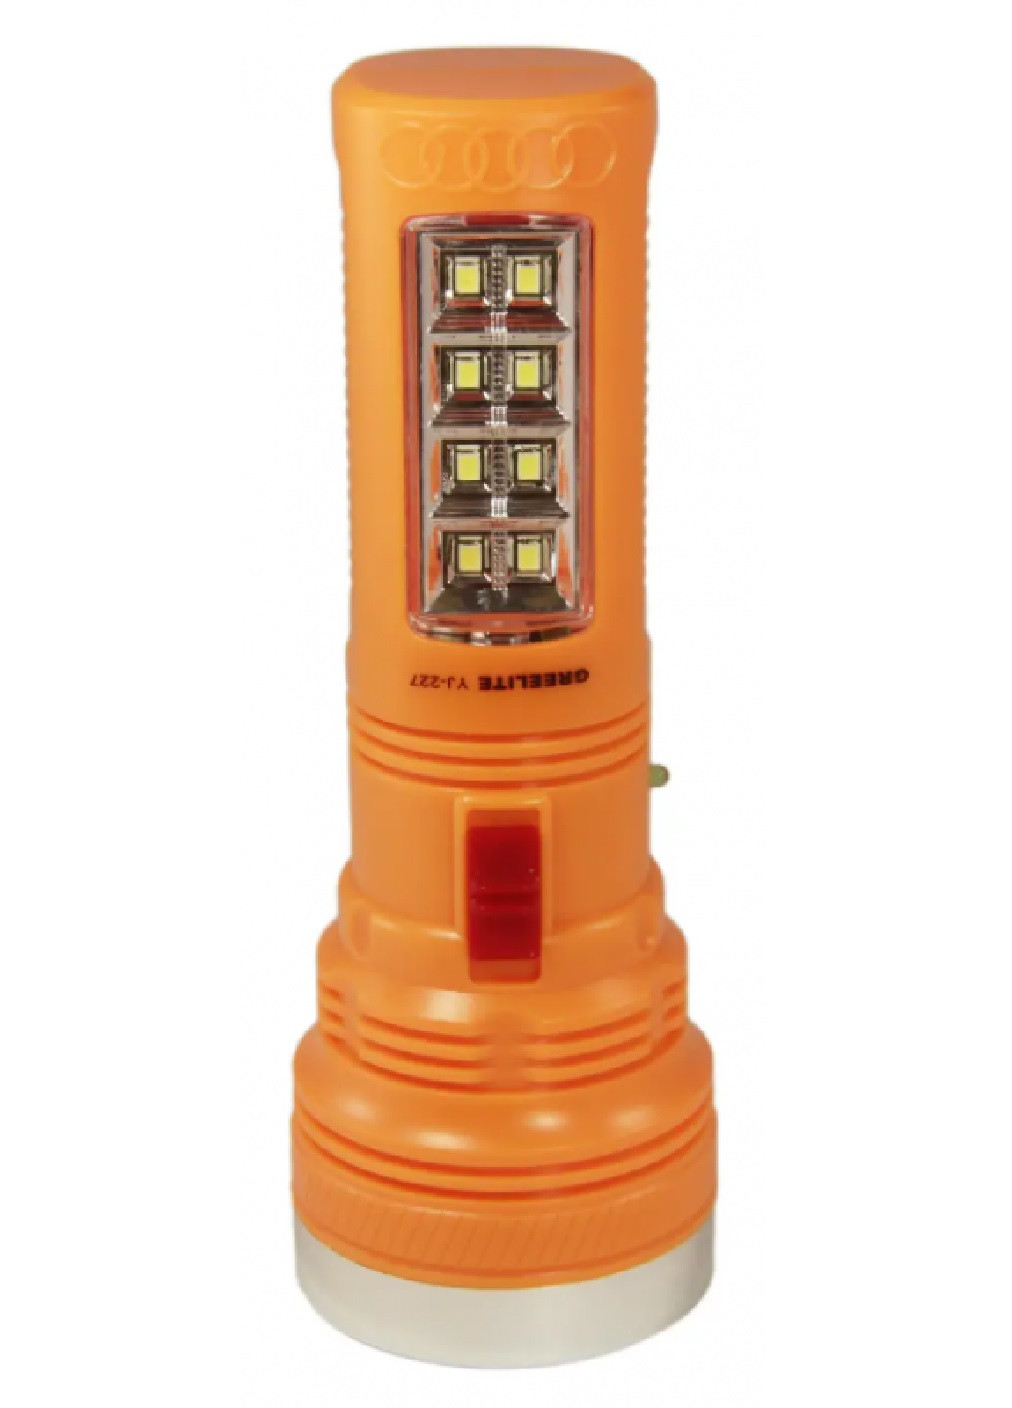 Фонарь светодиодный компактный переносной ручной аккумуляторный для охоты рыбалки туризма кемпинга 300 Lumen (473642-Prob) Unbranded (255878344)